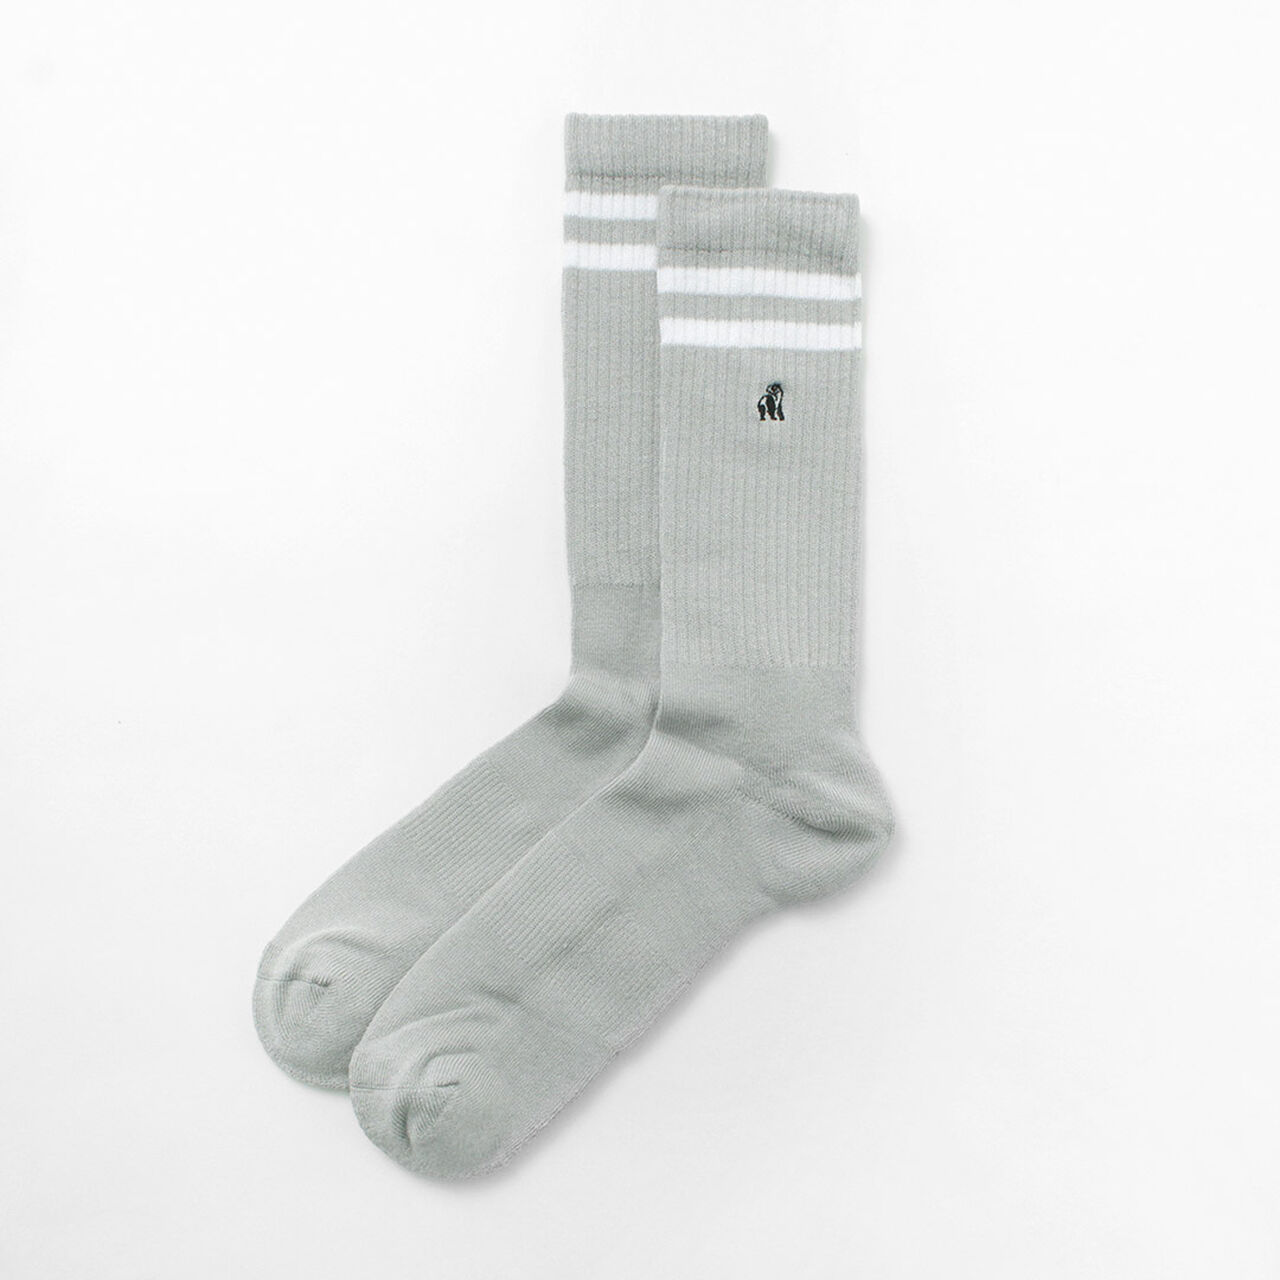 Bamboo line and logo socks,GreyAthletic, large image number 0